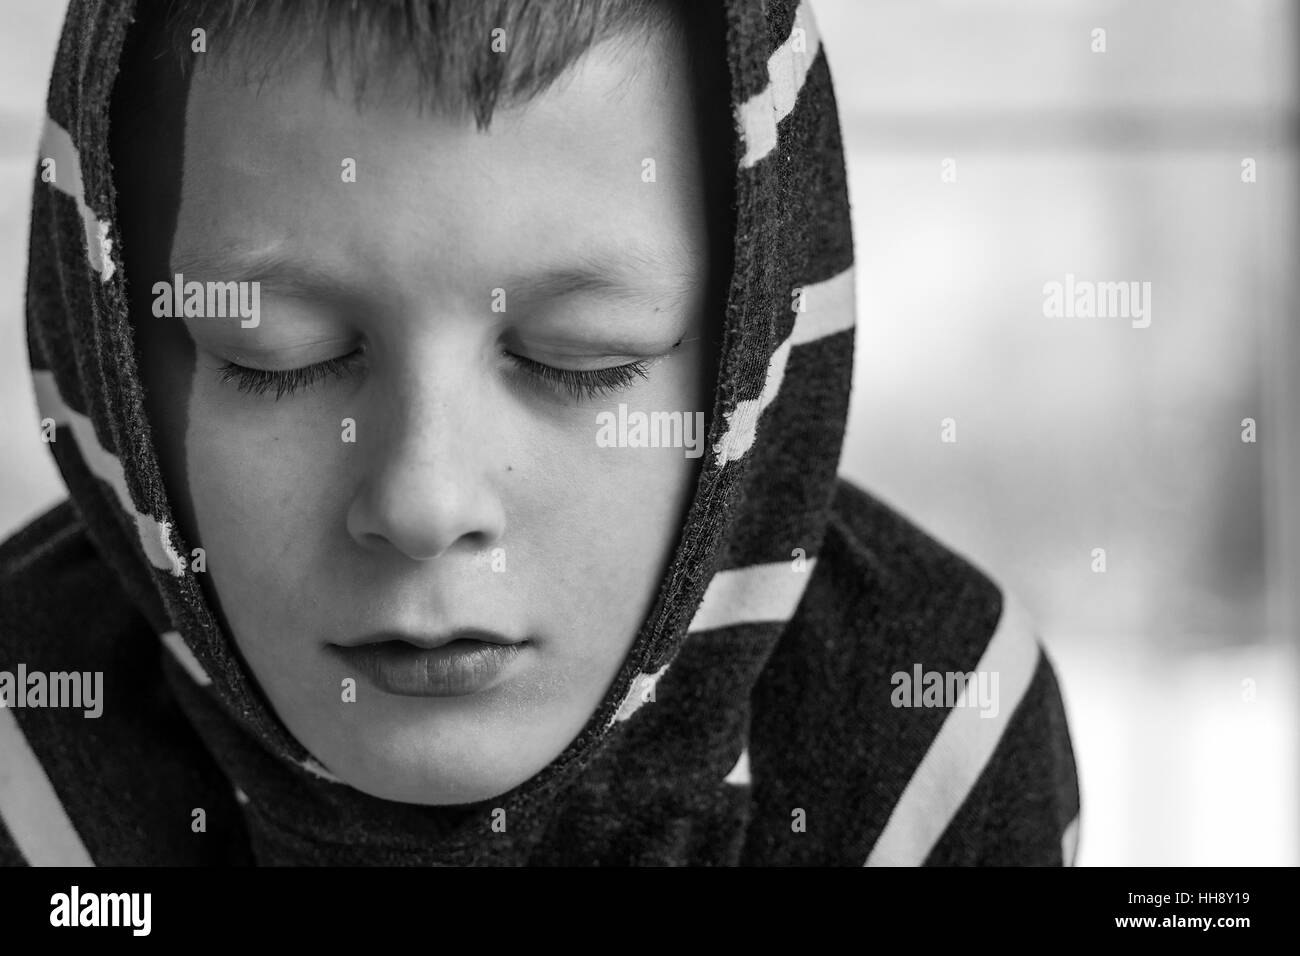 Trauriger junge. Teenager mit traurigen Ausdruck Gesicht hautnah. Einsamkeit, Depression und Stress-Konzept. Stockfoto